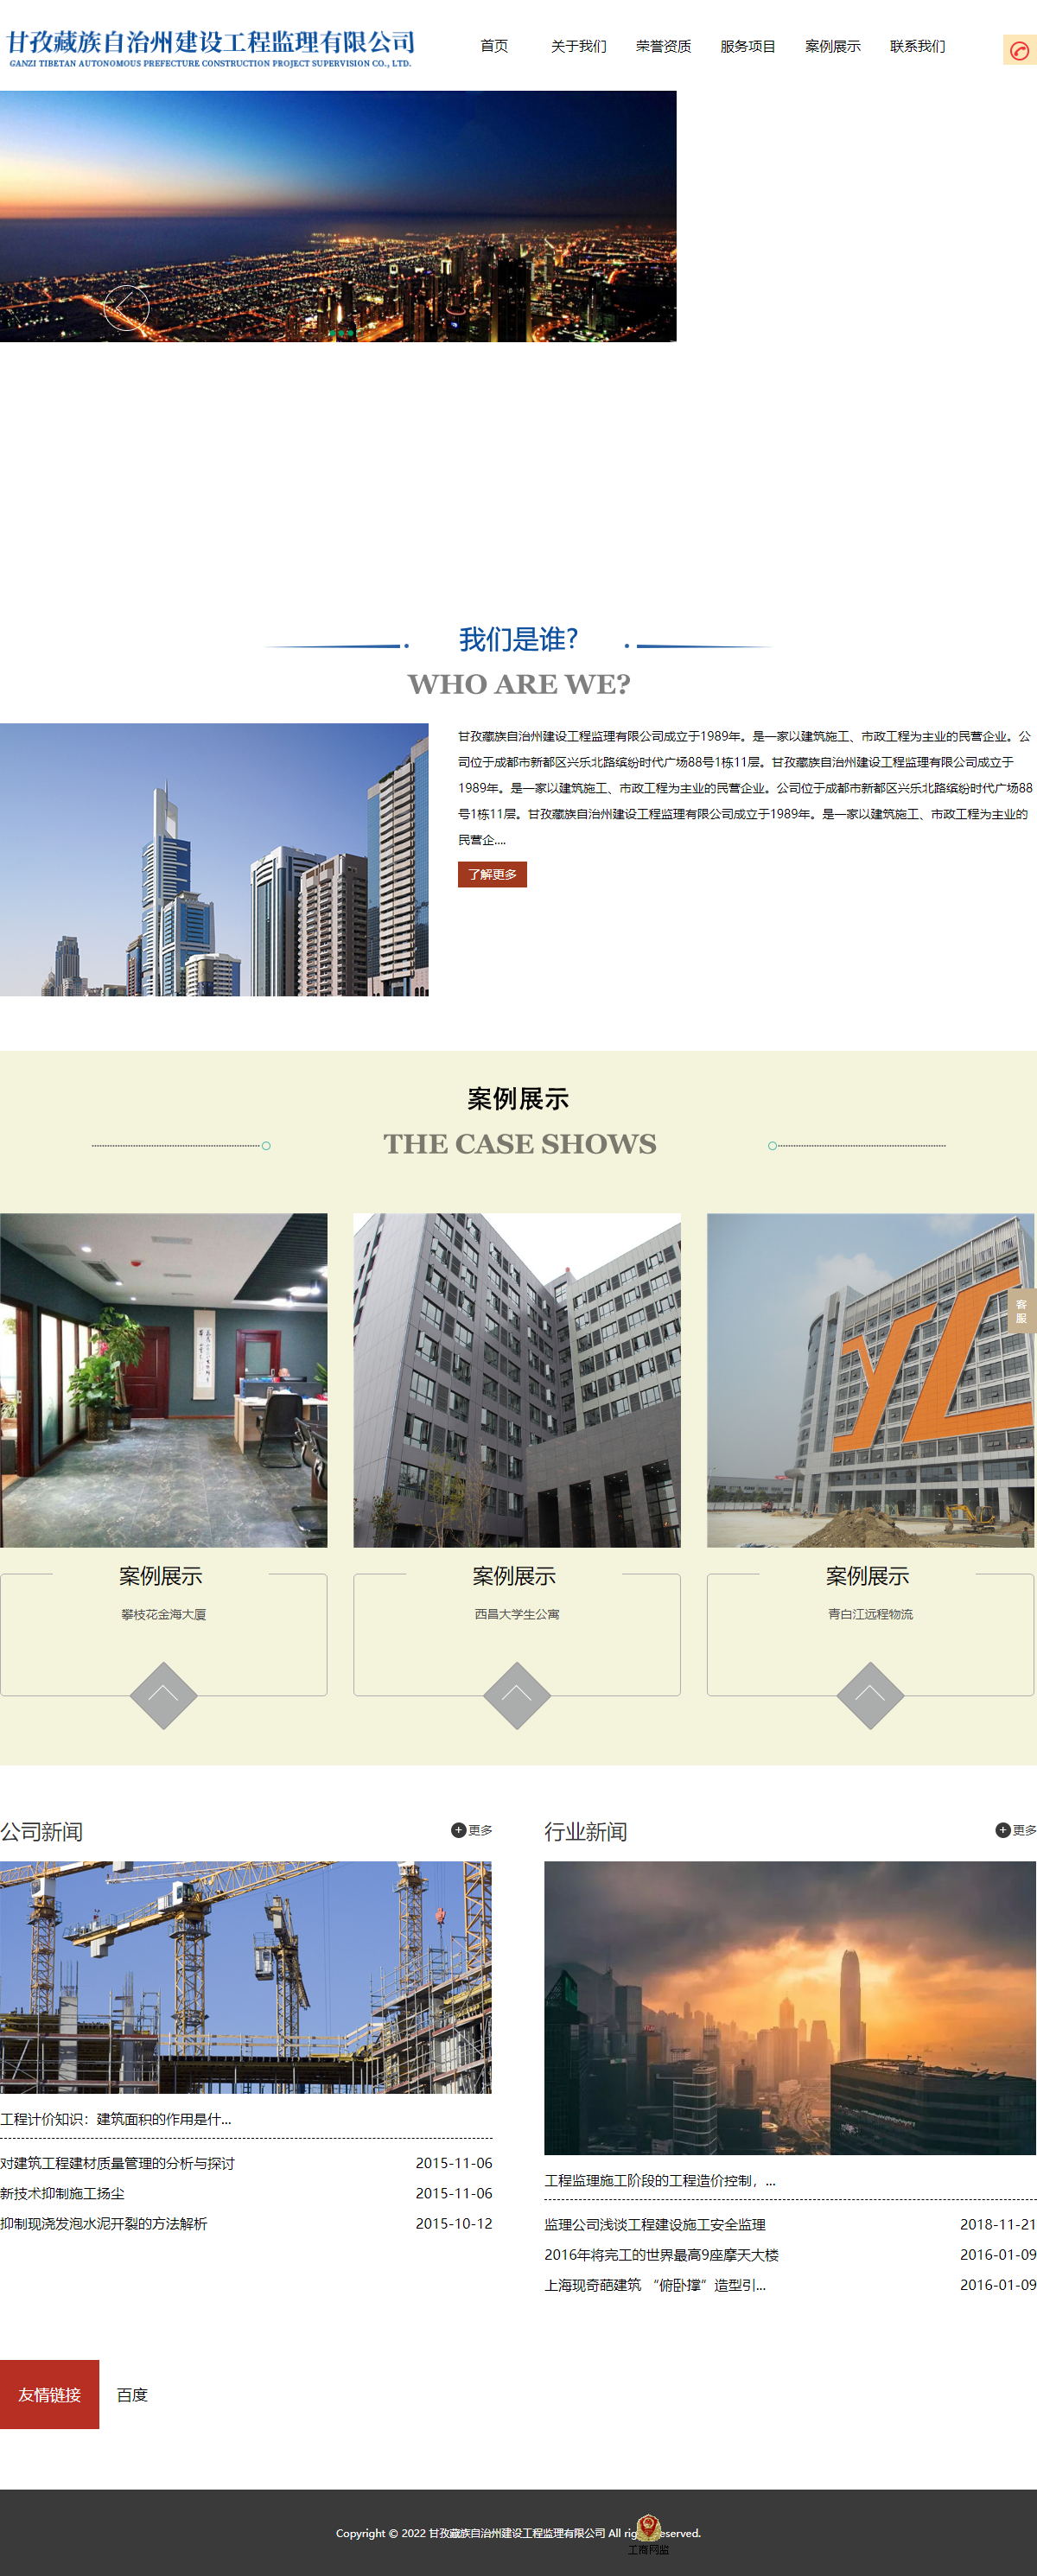 甘孜藏族自治州建设工程监理有限公司网站案例